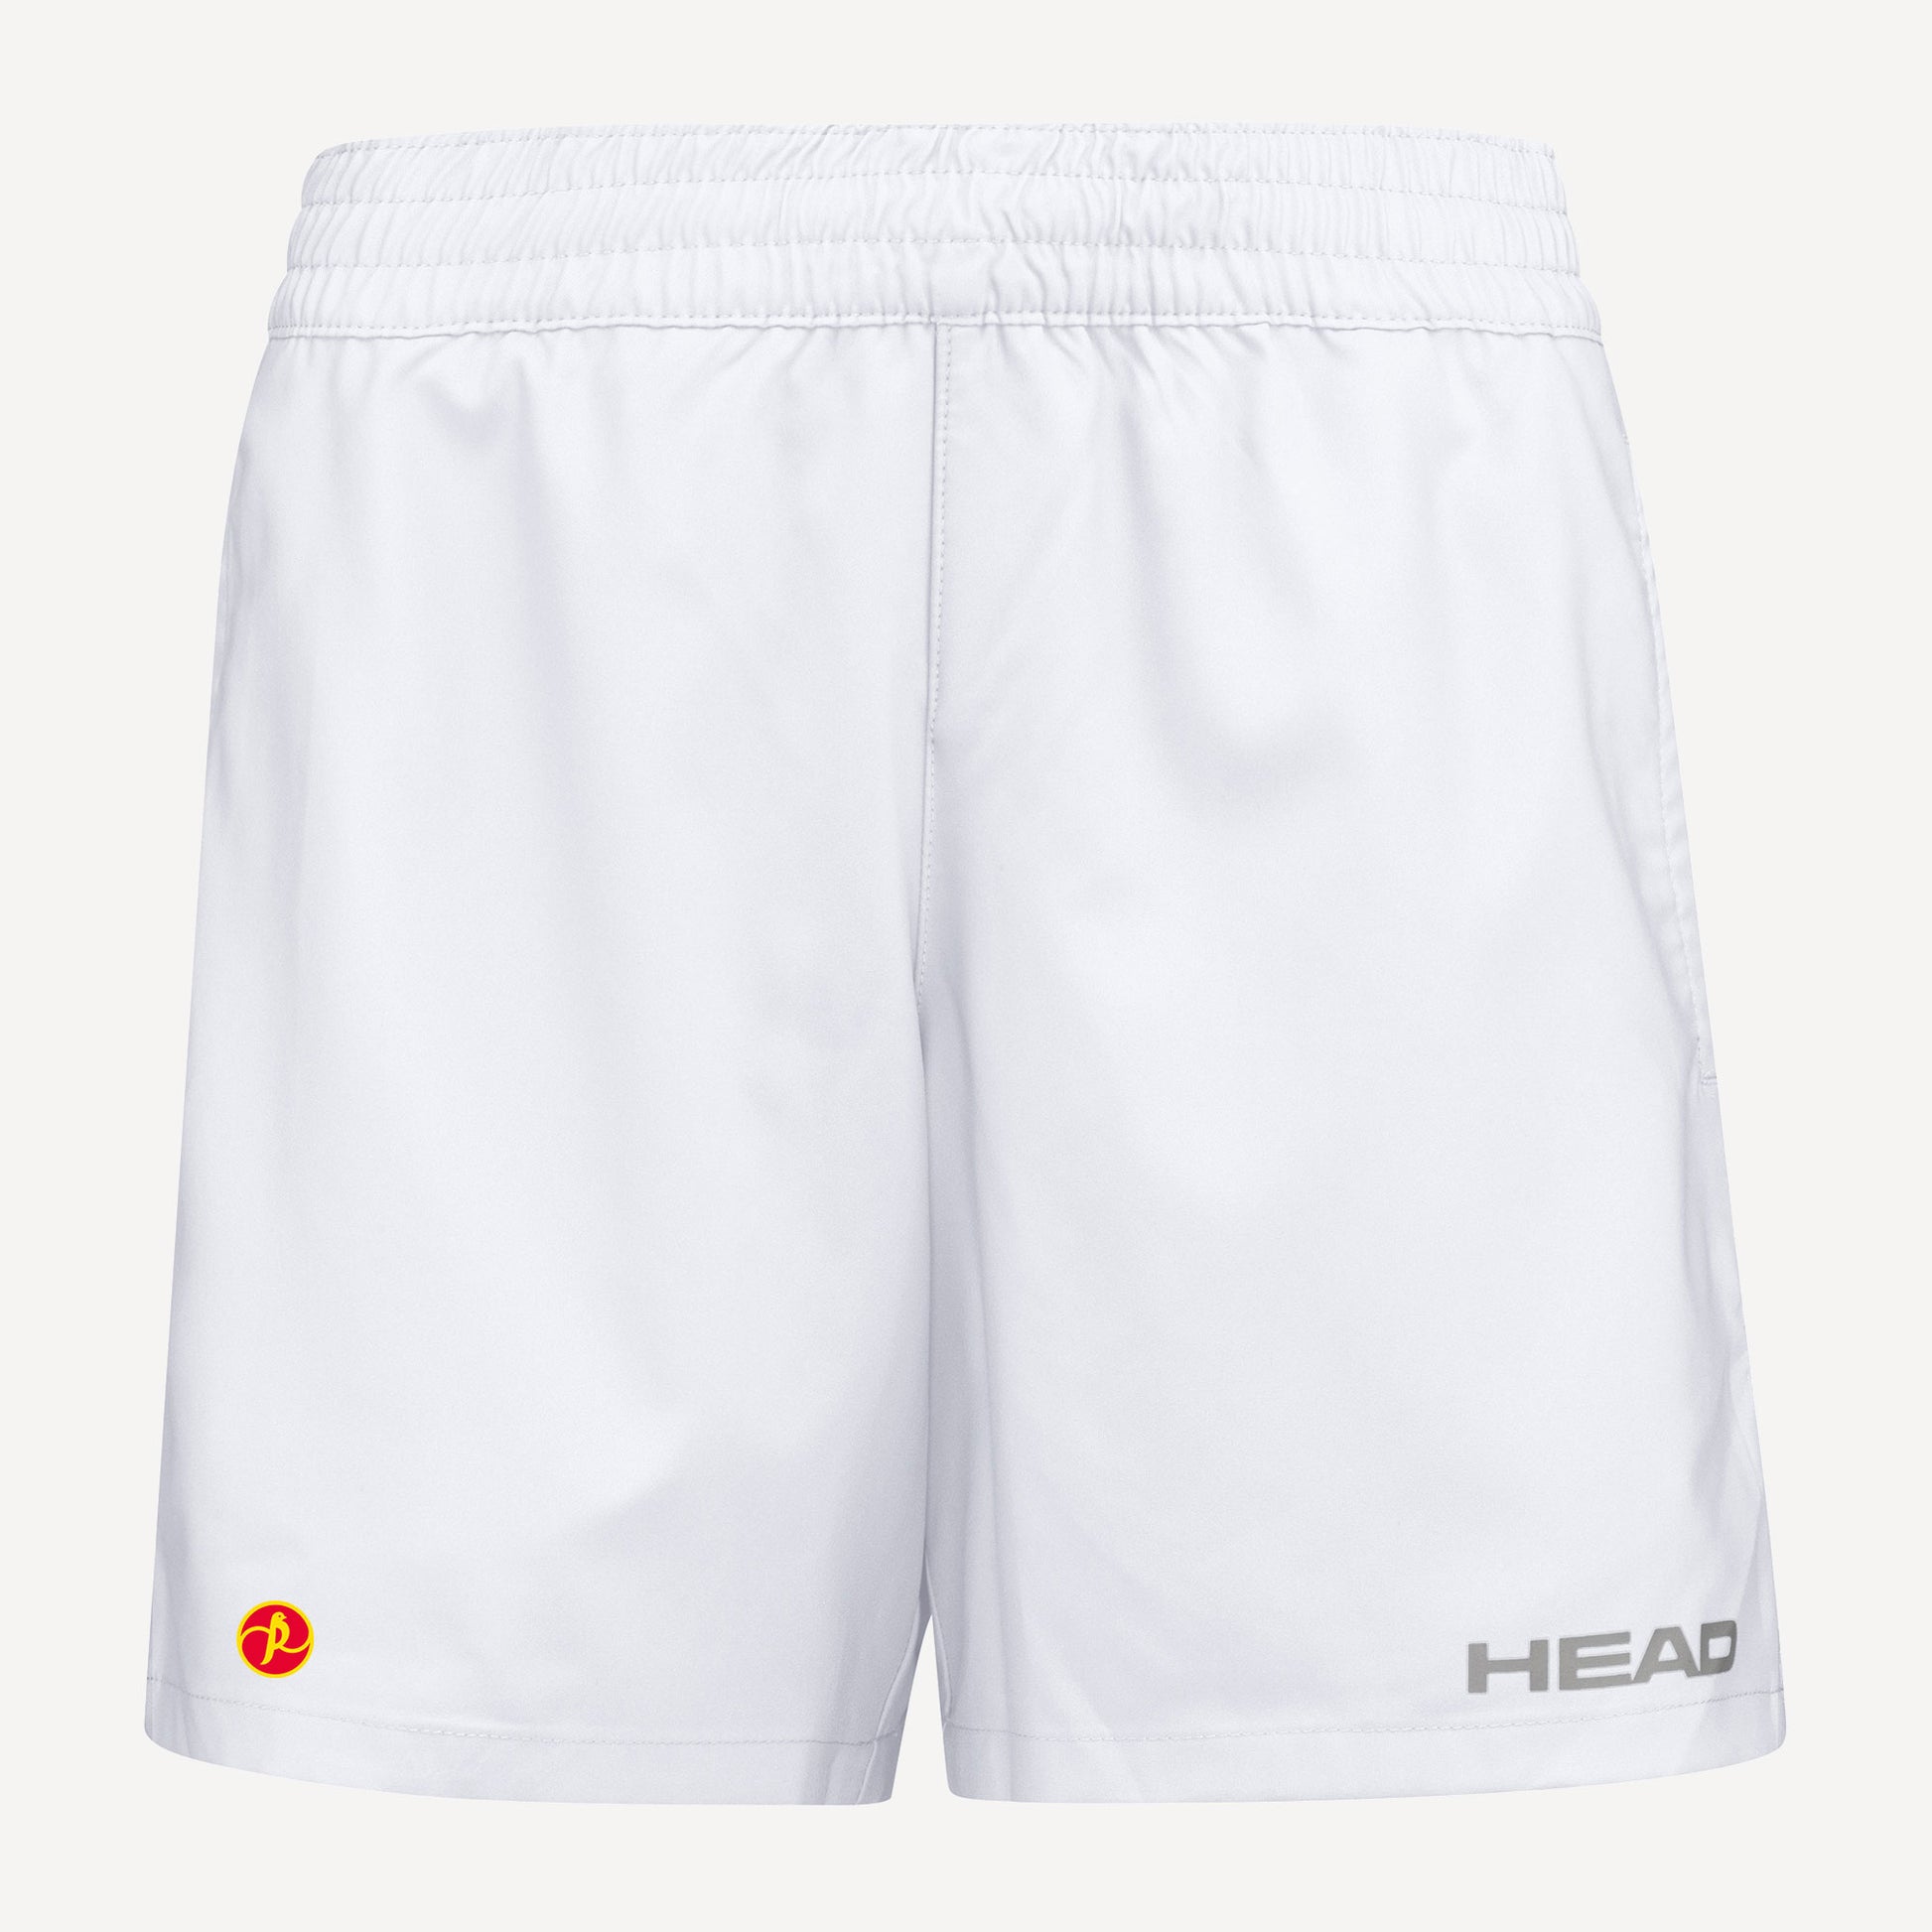 HEAD Club Women's Tennis Shorts White (1)